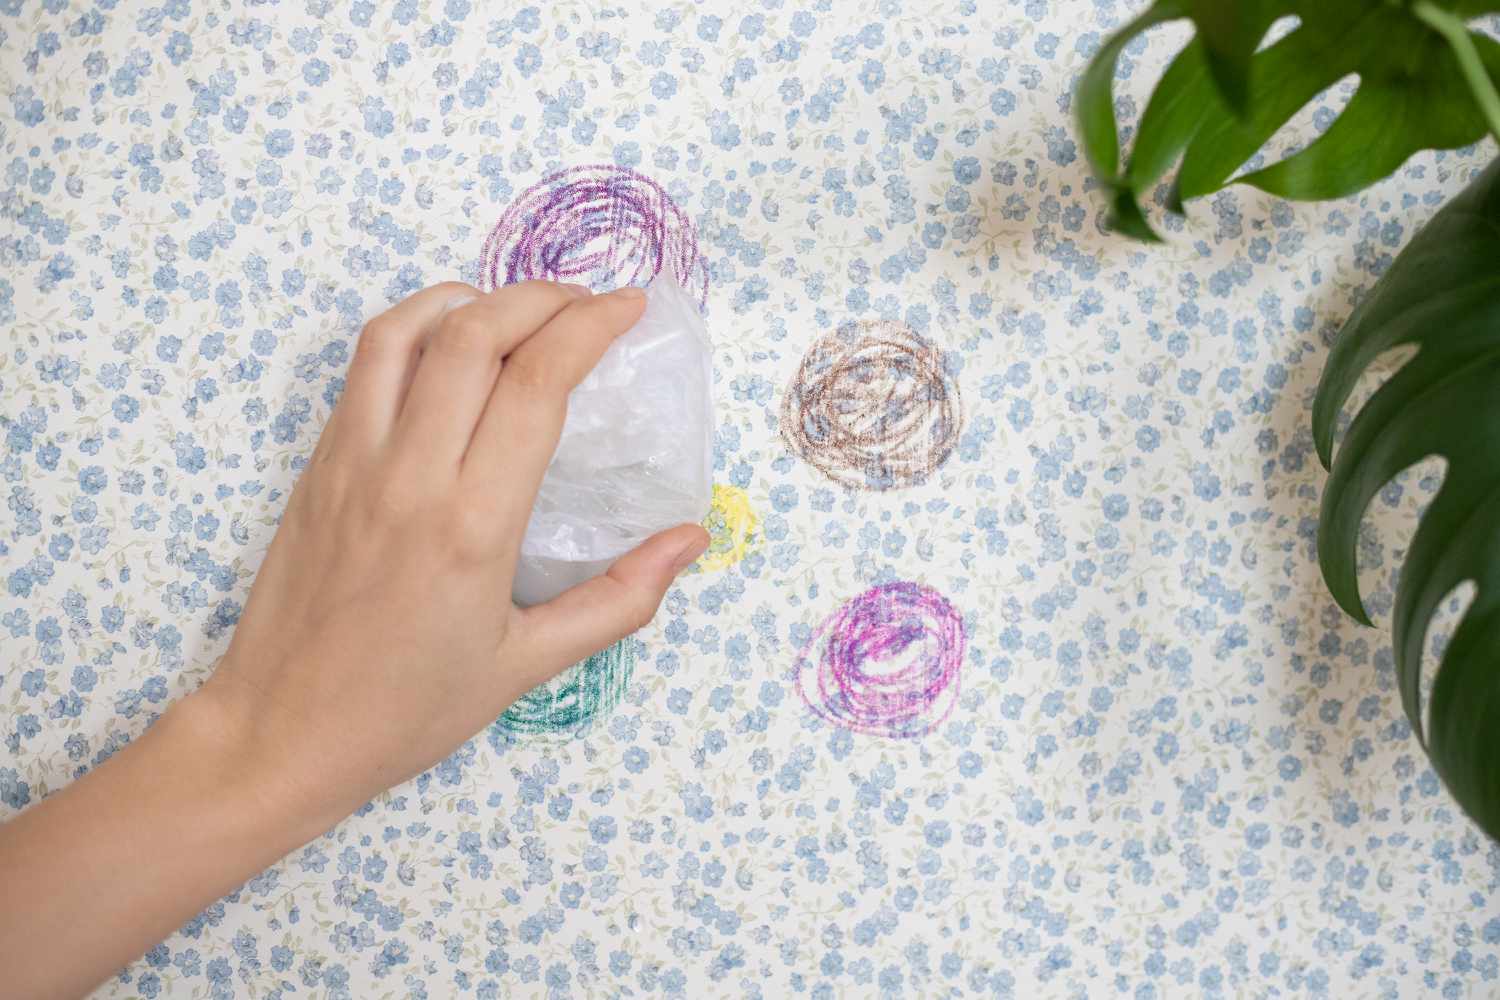 Eiswürfel in einer Plastiktüte, die gegen die Tapete gedrückt werden, um Wachsreste zu härten